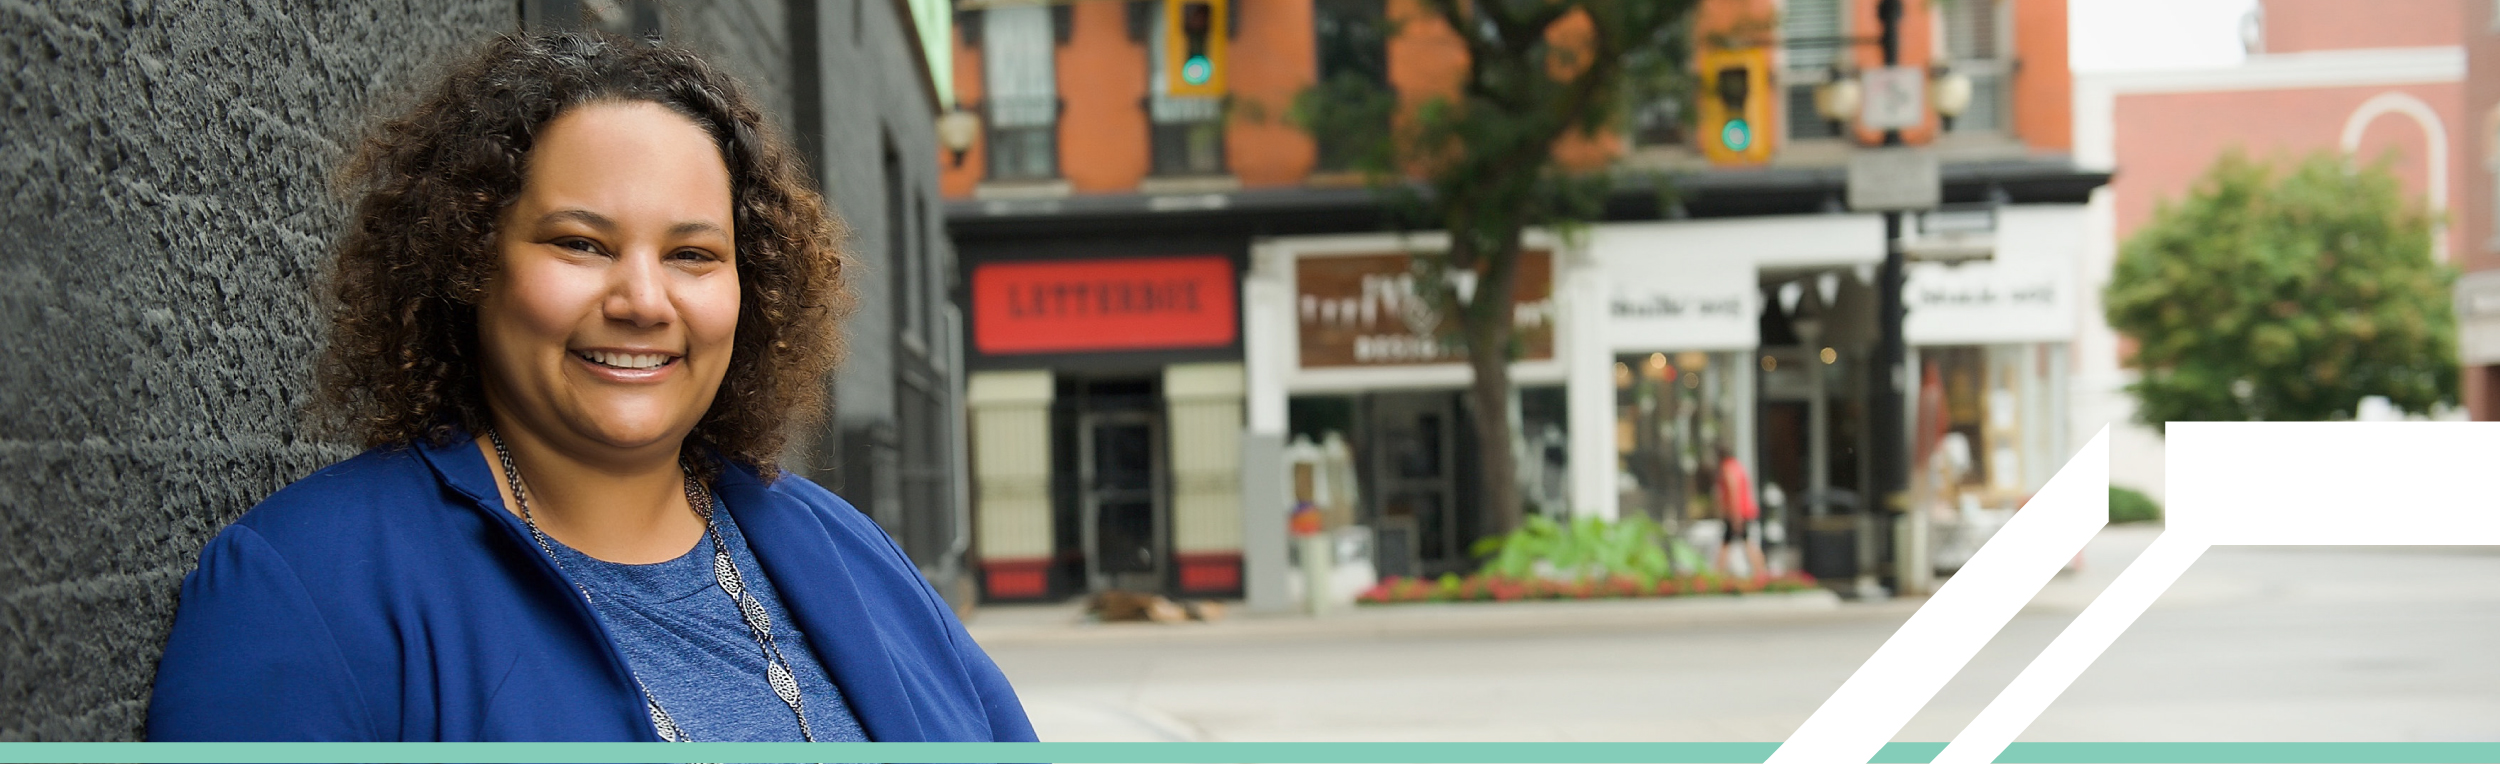 Une femme noire, souriante, portant une chemise et une veste bleue roi, se tient à l'extérieur d'une rue calme de la ville